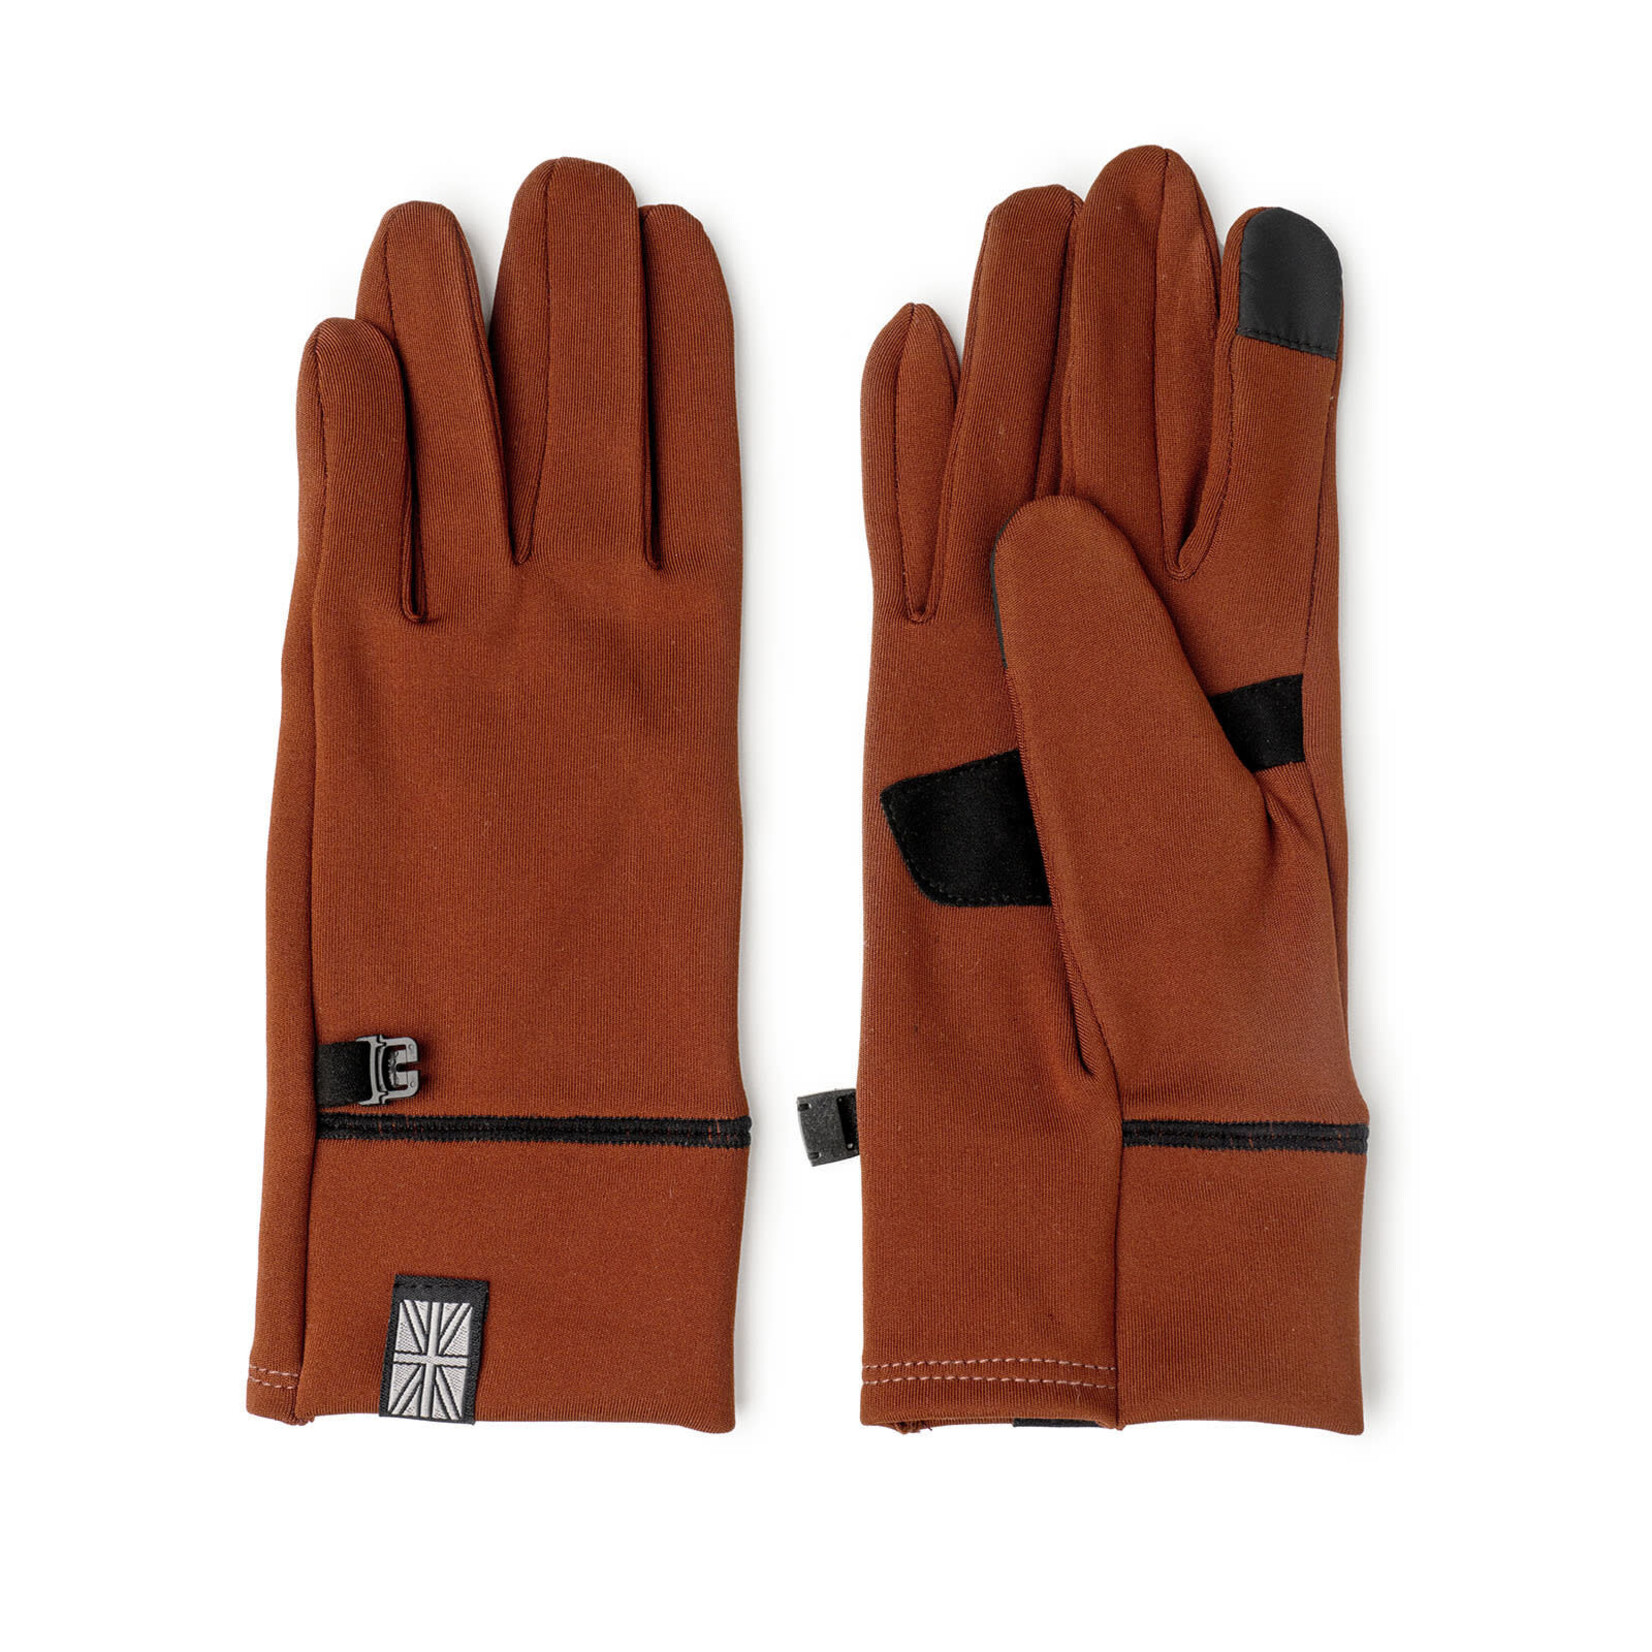 Britt's Knits Britt's Knits ThermalTech Gloves Rust L/XL